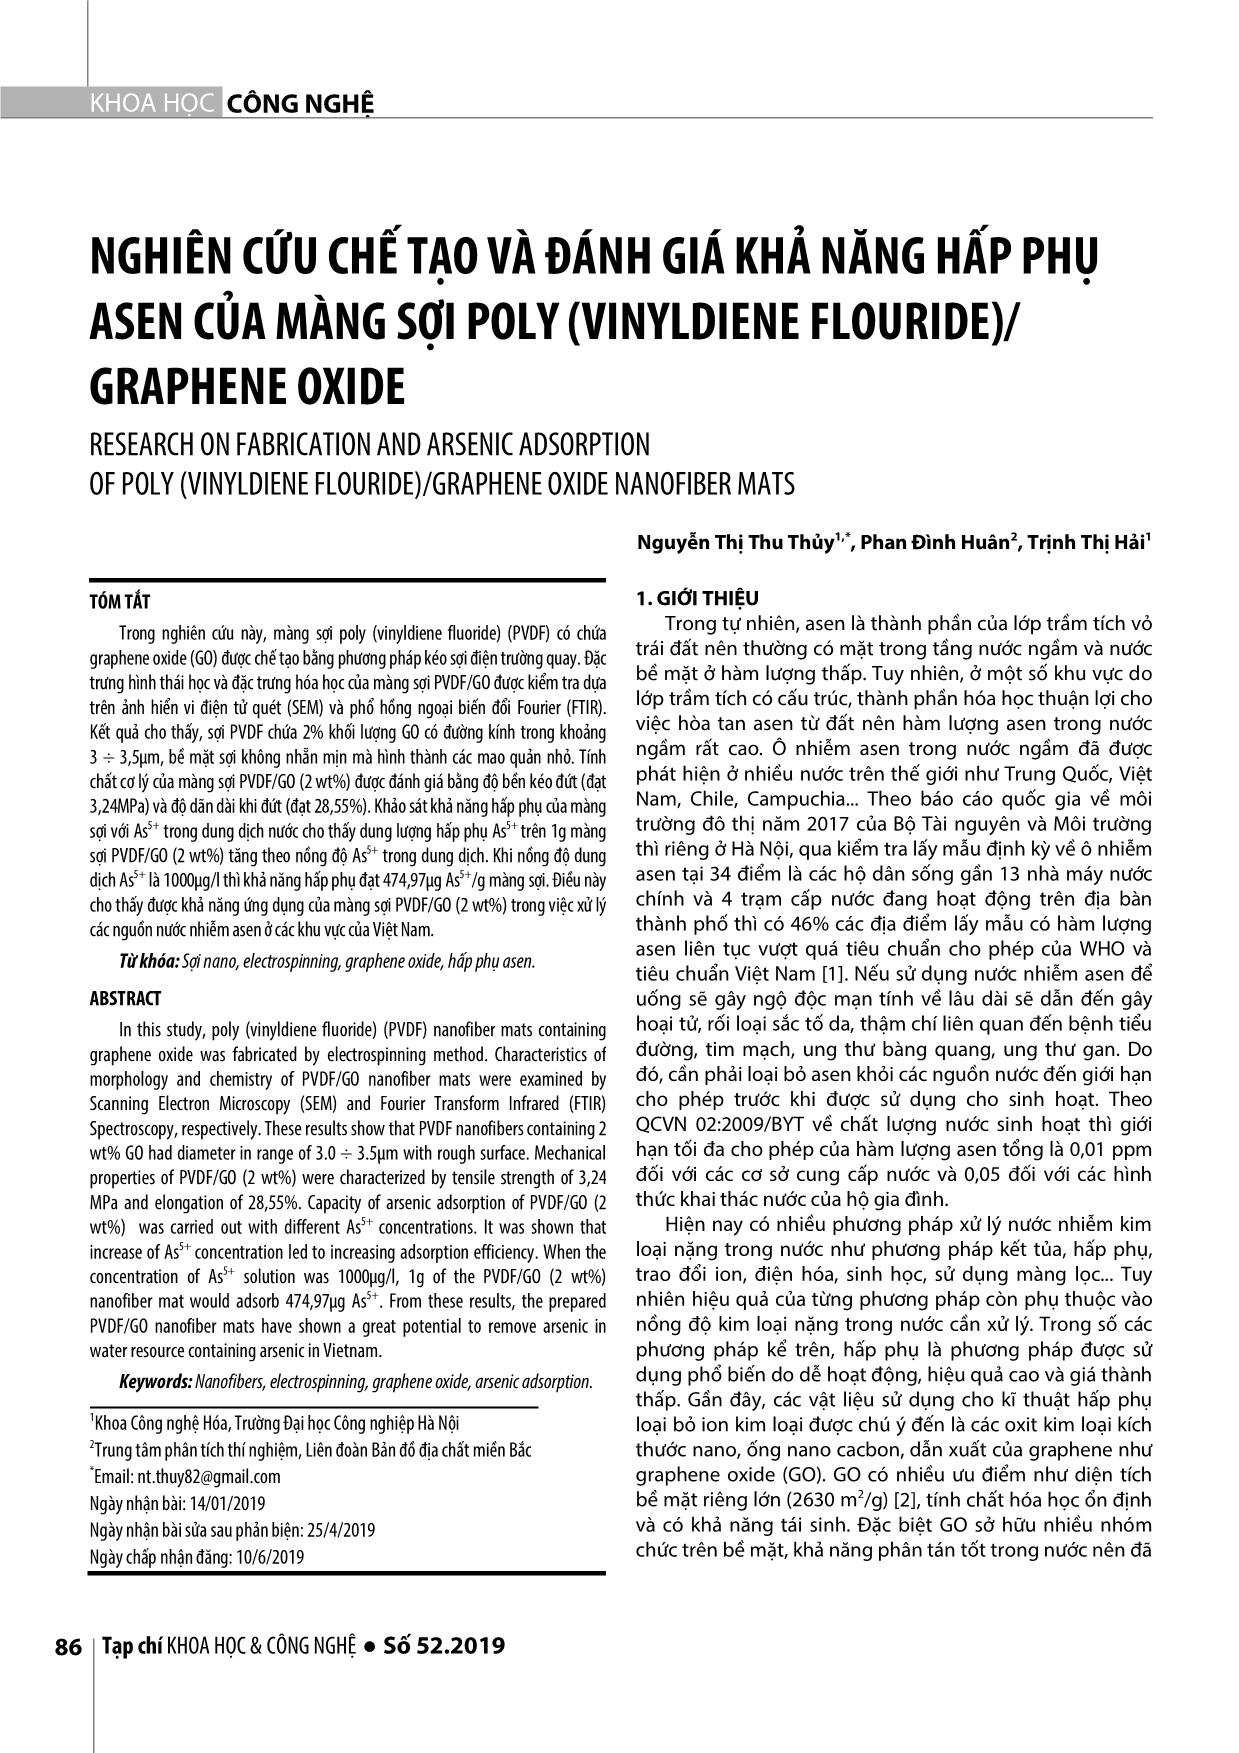 Nghiên cứu chế tạo và đánh giá khả năng hấp phụ asen của màng sợi poly (vinyldiene flouride)/ Graphene Oxide trang 1